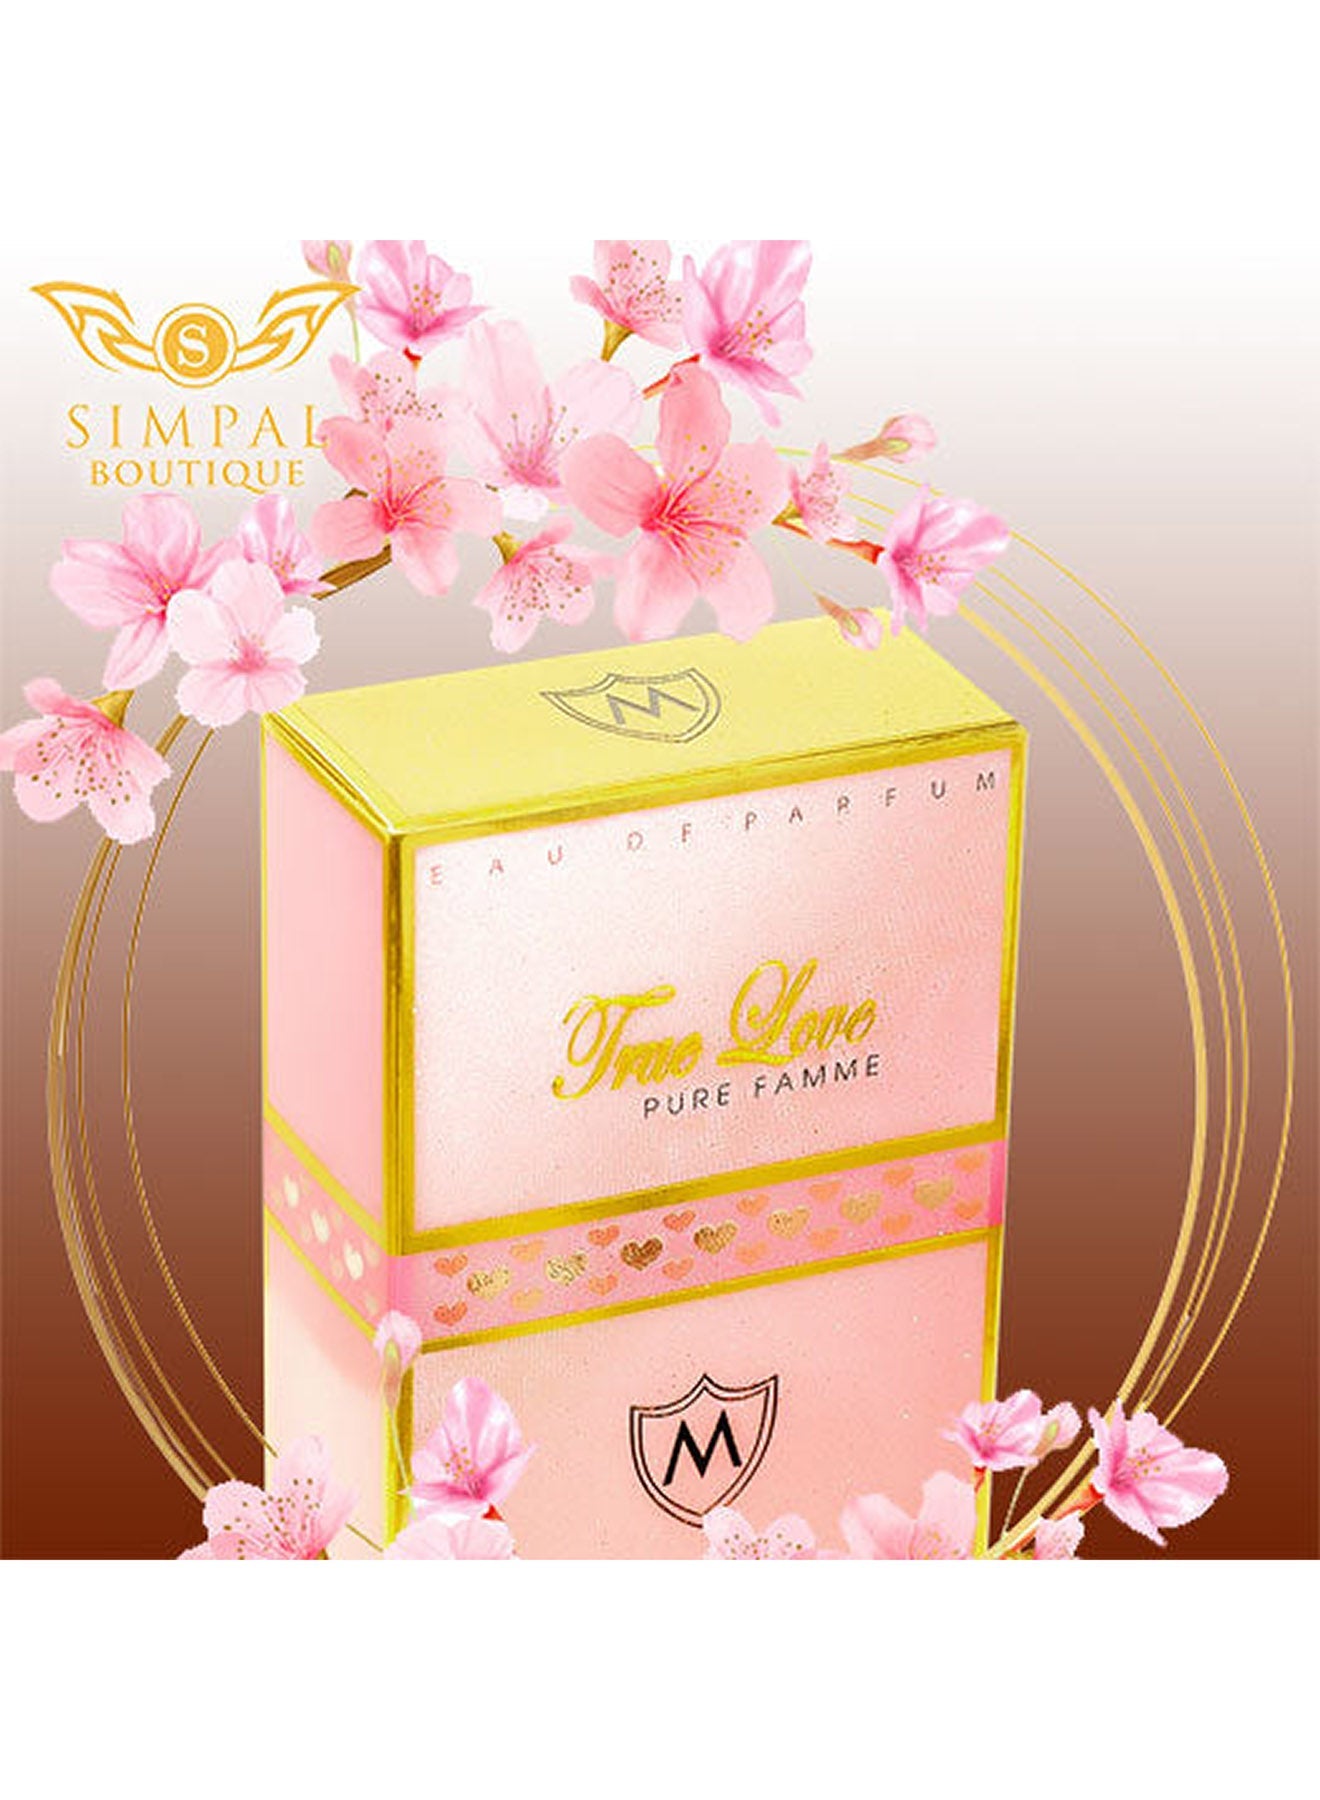 True Love Pure Famme Eau de Parfum 100 ml Value Pack of 2 